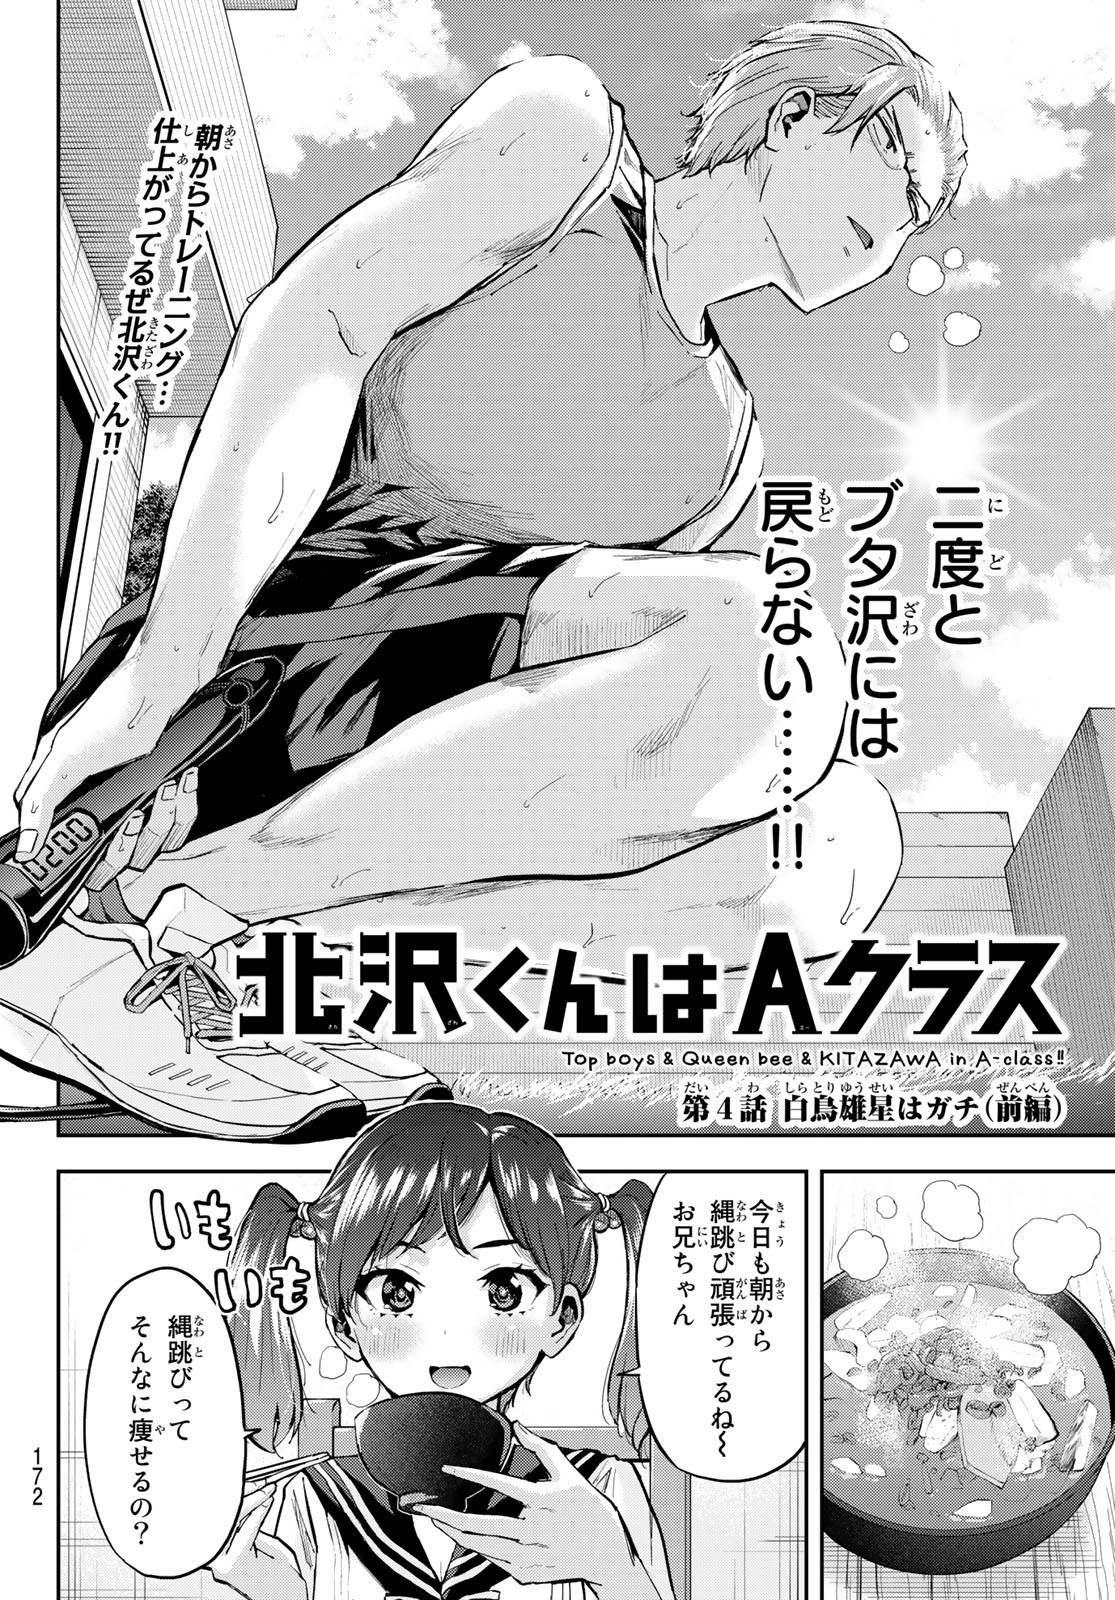 Kitazawa-kun wa A Class - Chapter 004 - Page 2